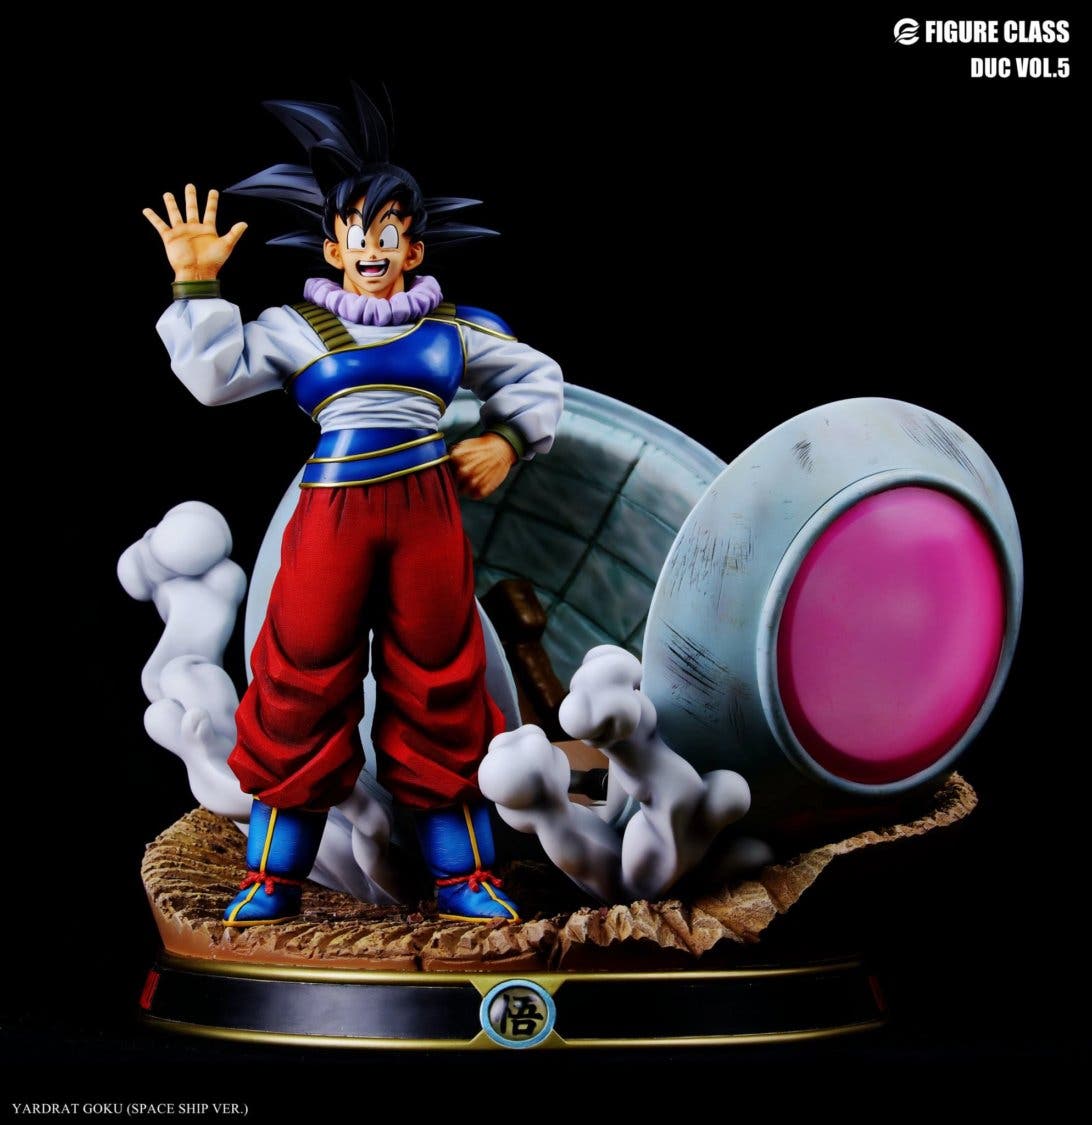 Goku llega de Yardrat en la espectacular nueva figura de Dragon Ball